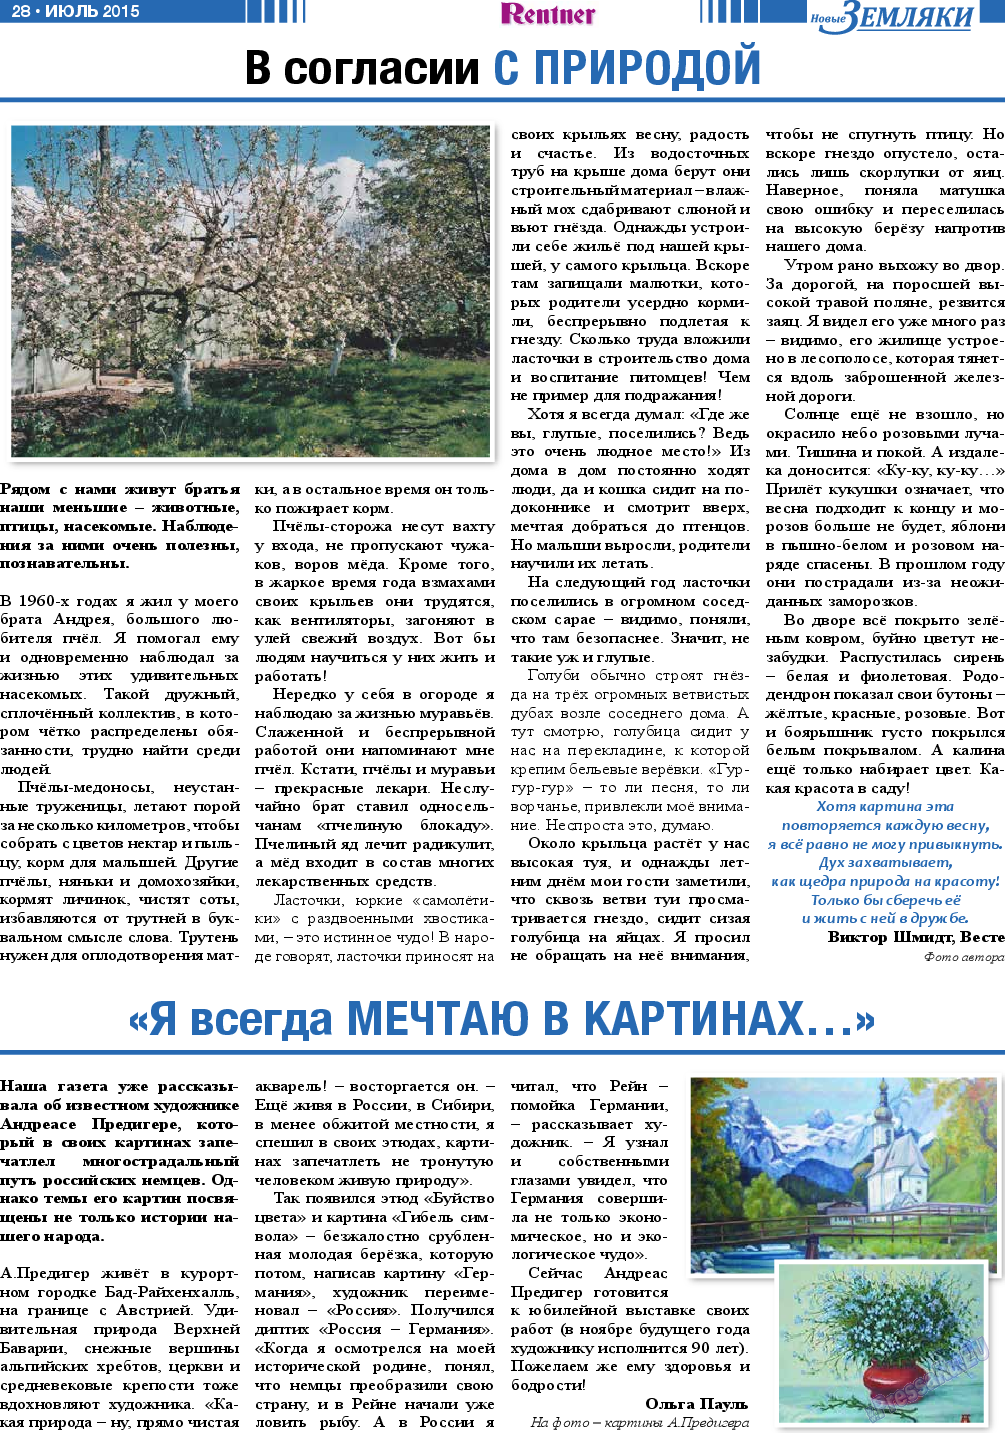 Новые Земляки, газета. 2015 №7 стр.28